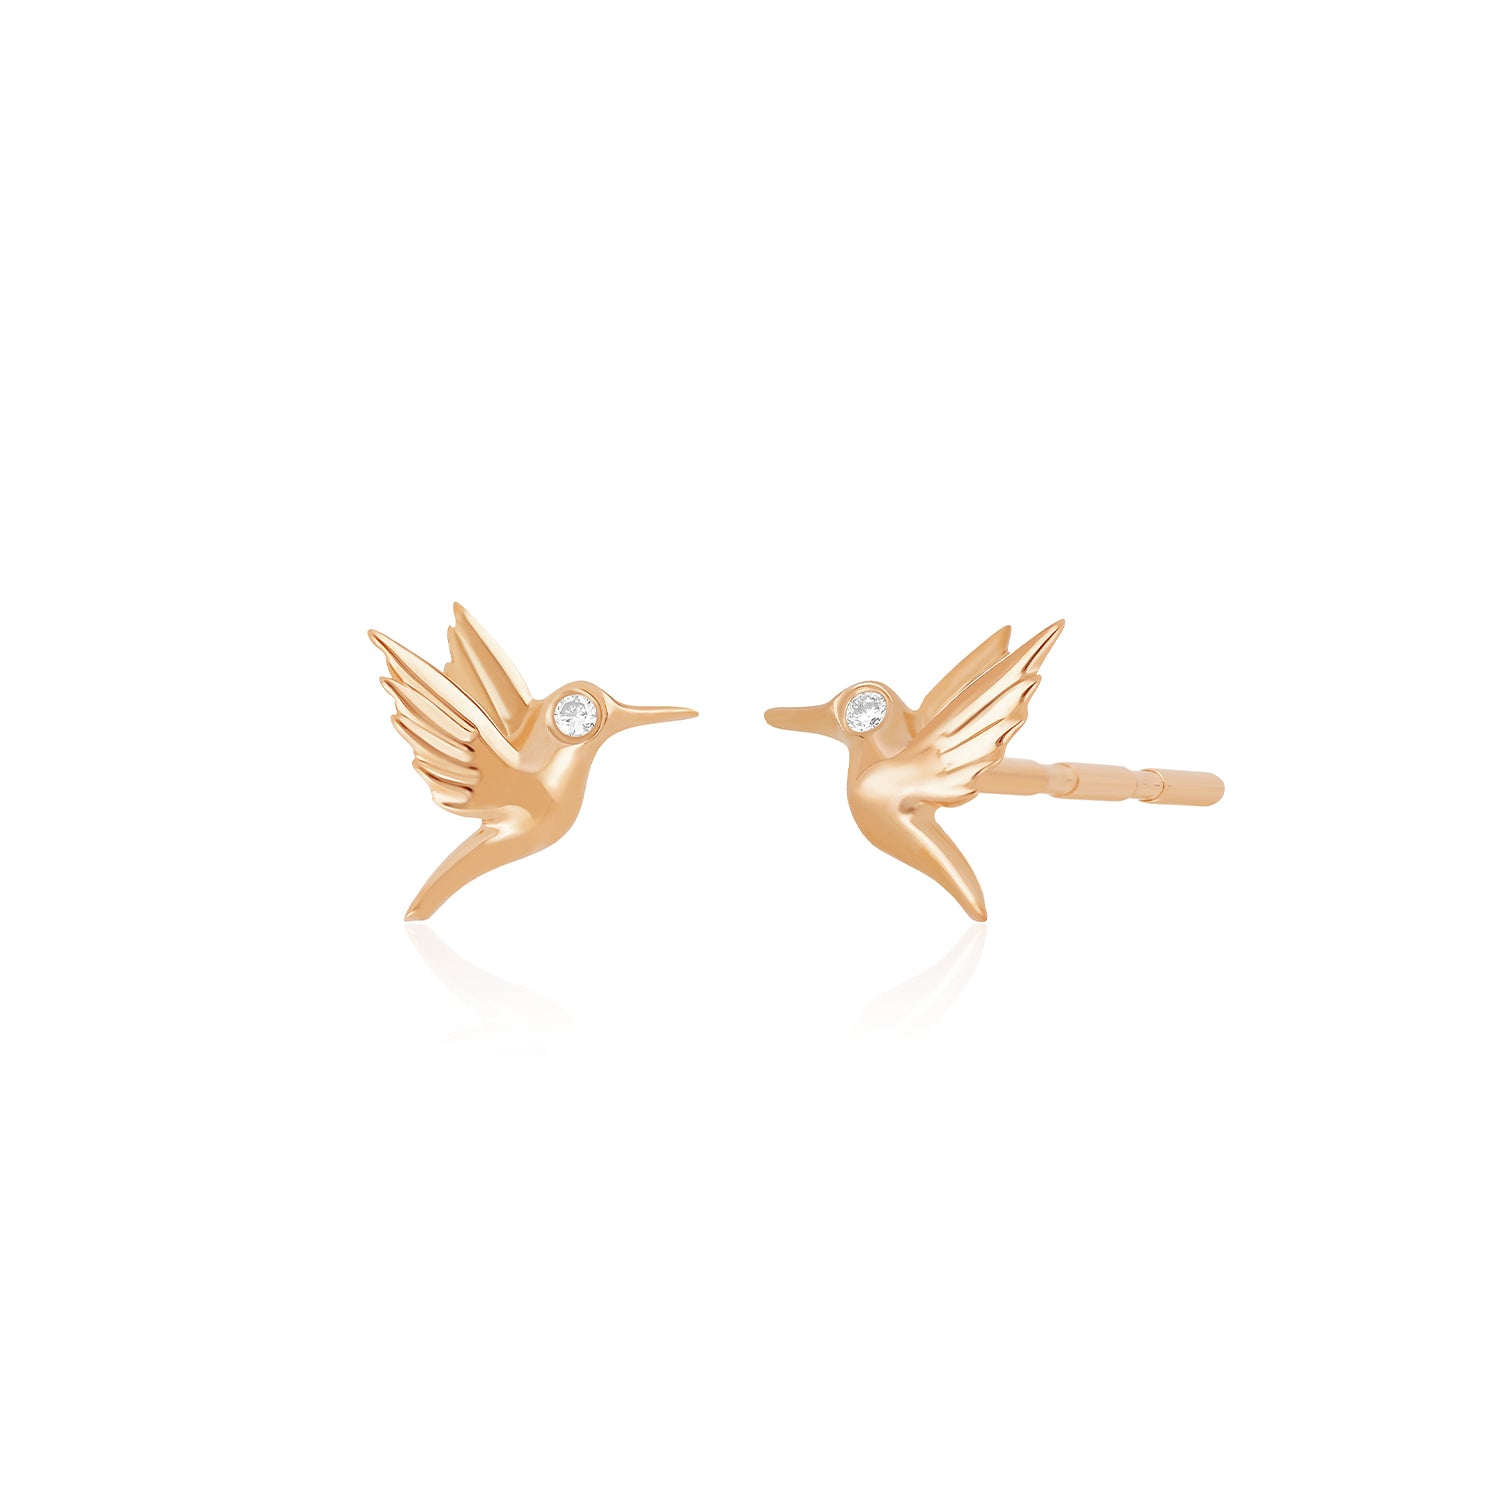 Mini Hummingbird Stud Earring With Diamond Eye in 14k rose gold